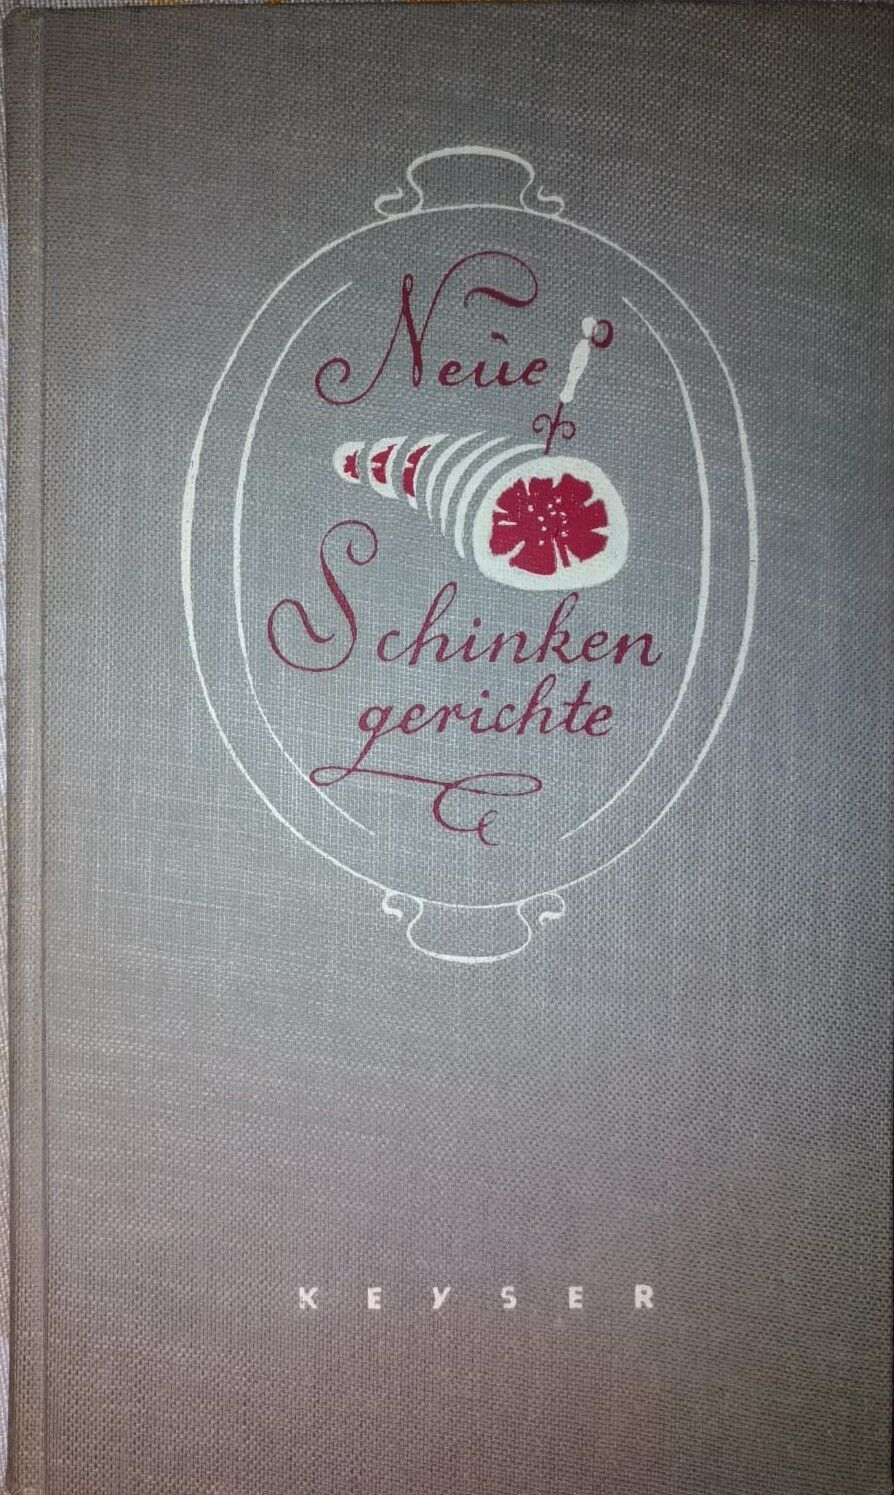 Neue Schinkengerichte-Keyser,1954,Keyserschen Verlagsbuchhandlung Heidelberg -S